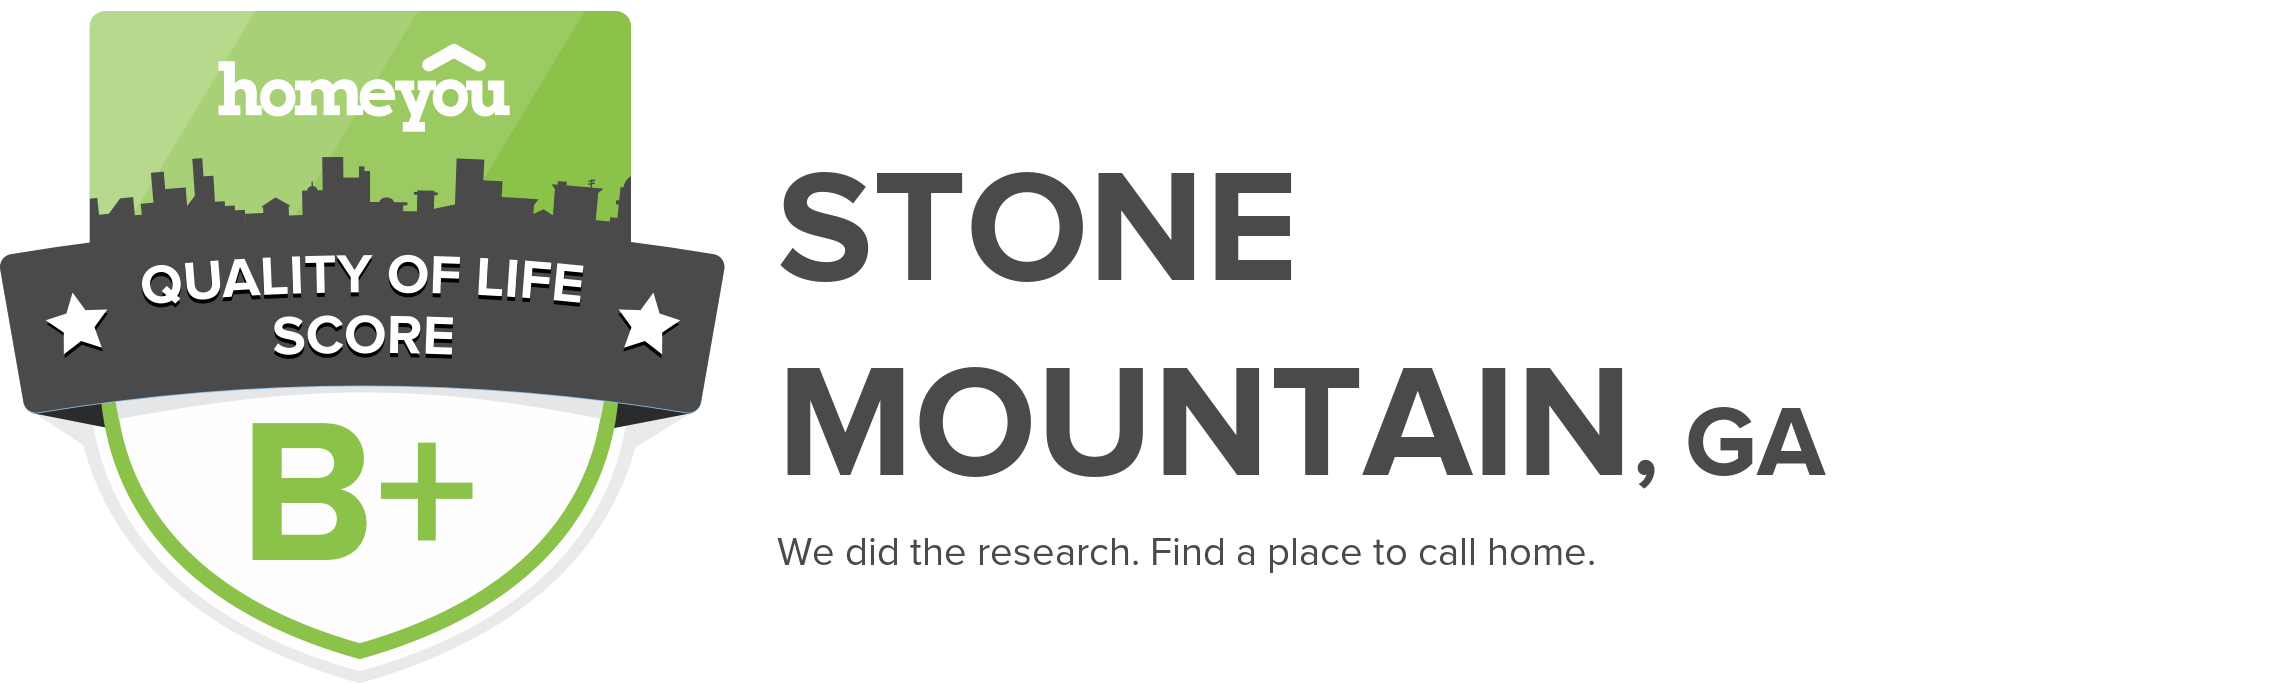 Stone Mountain, GA